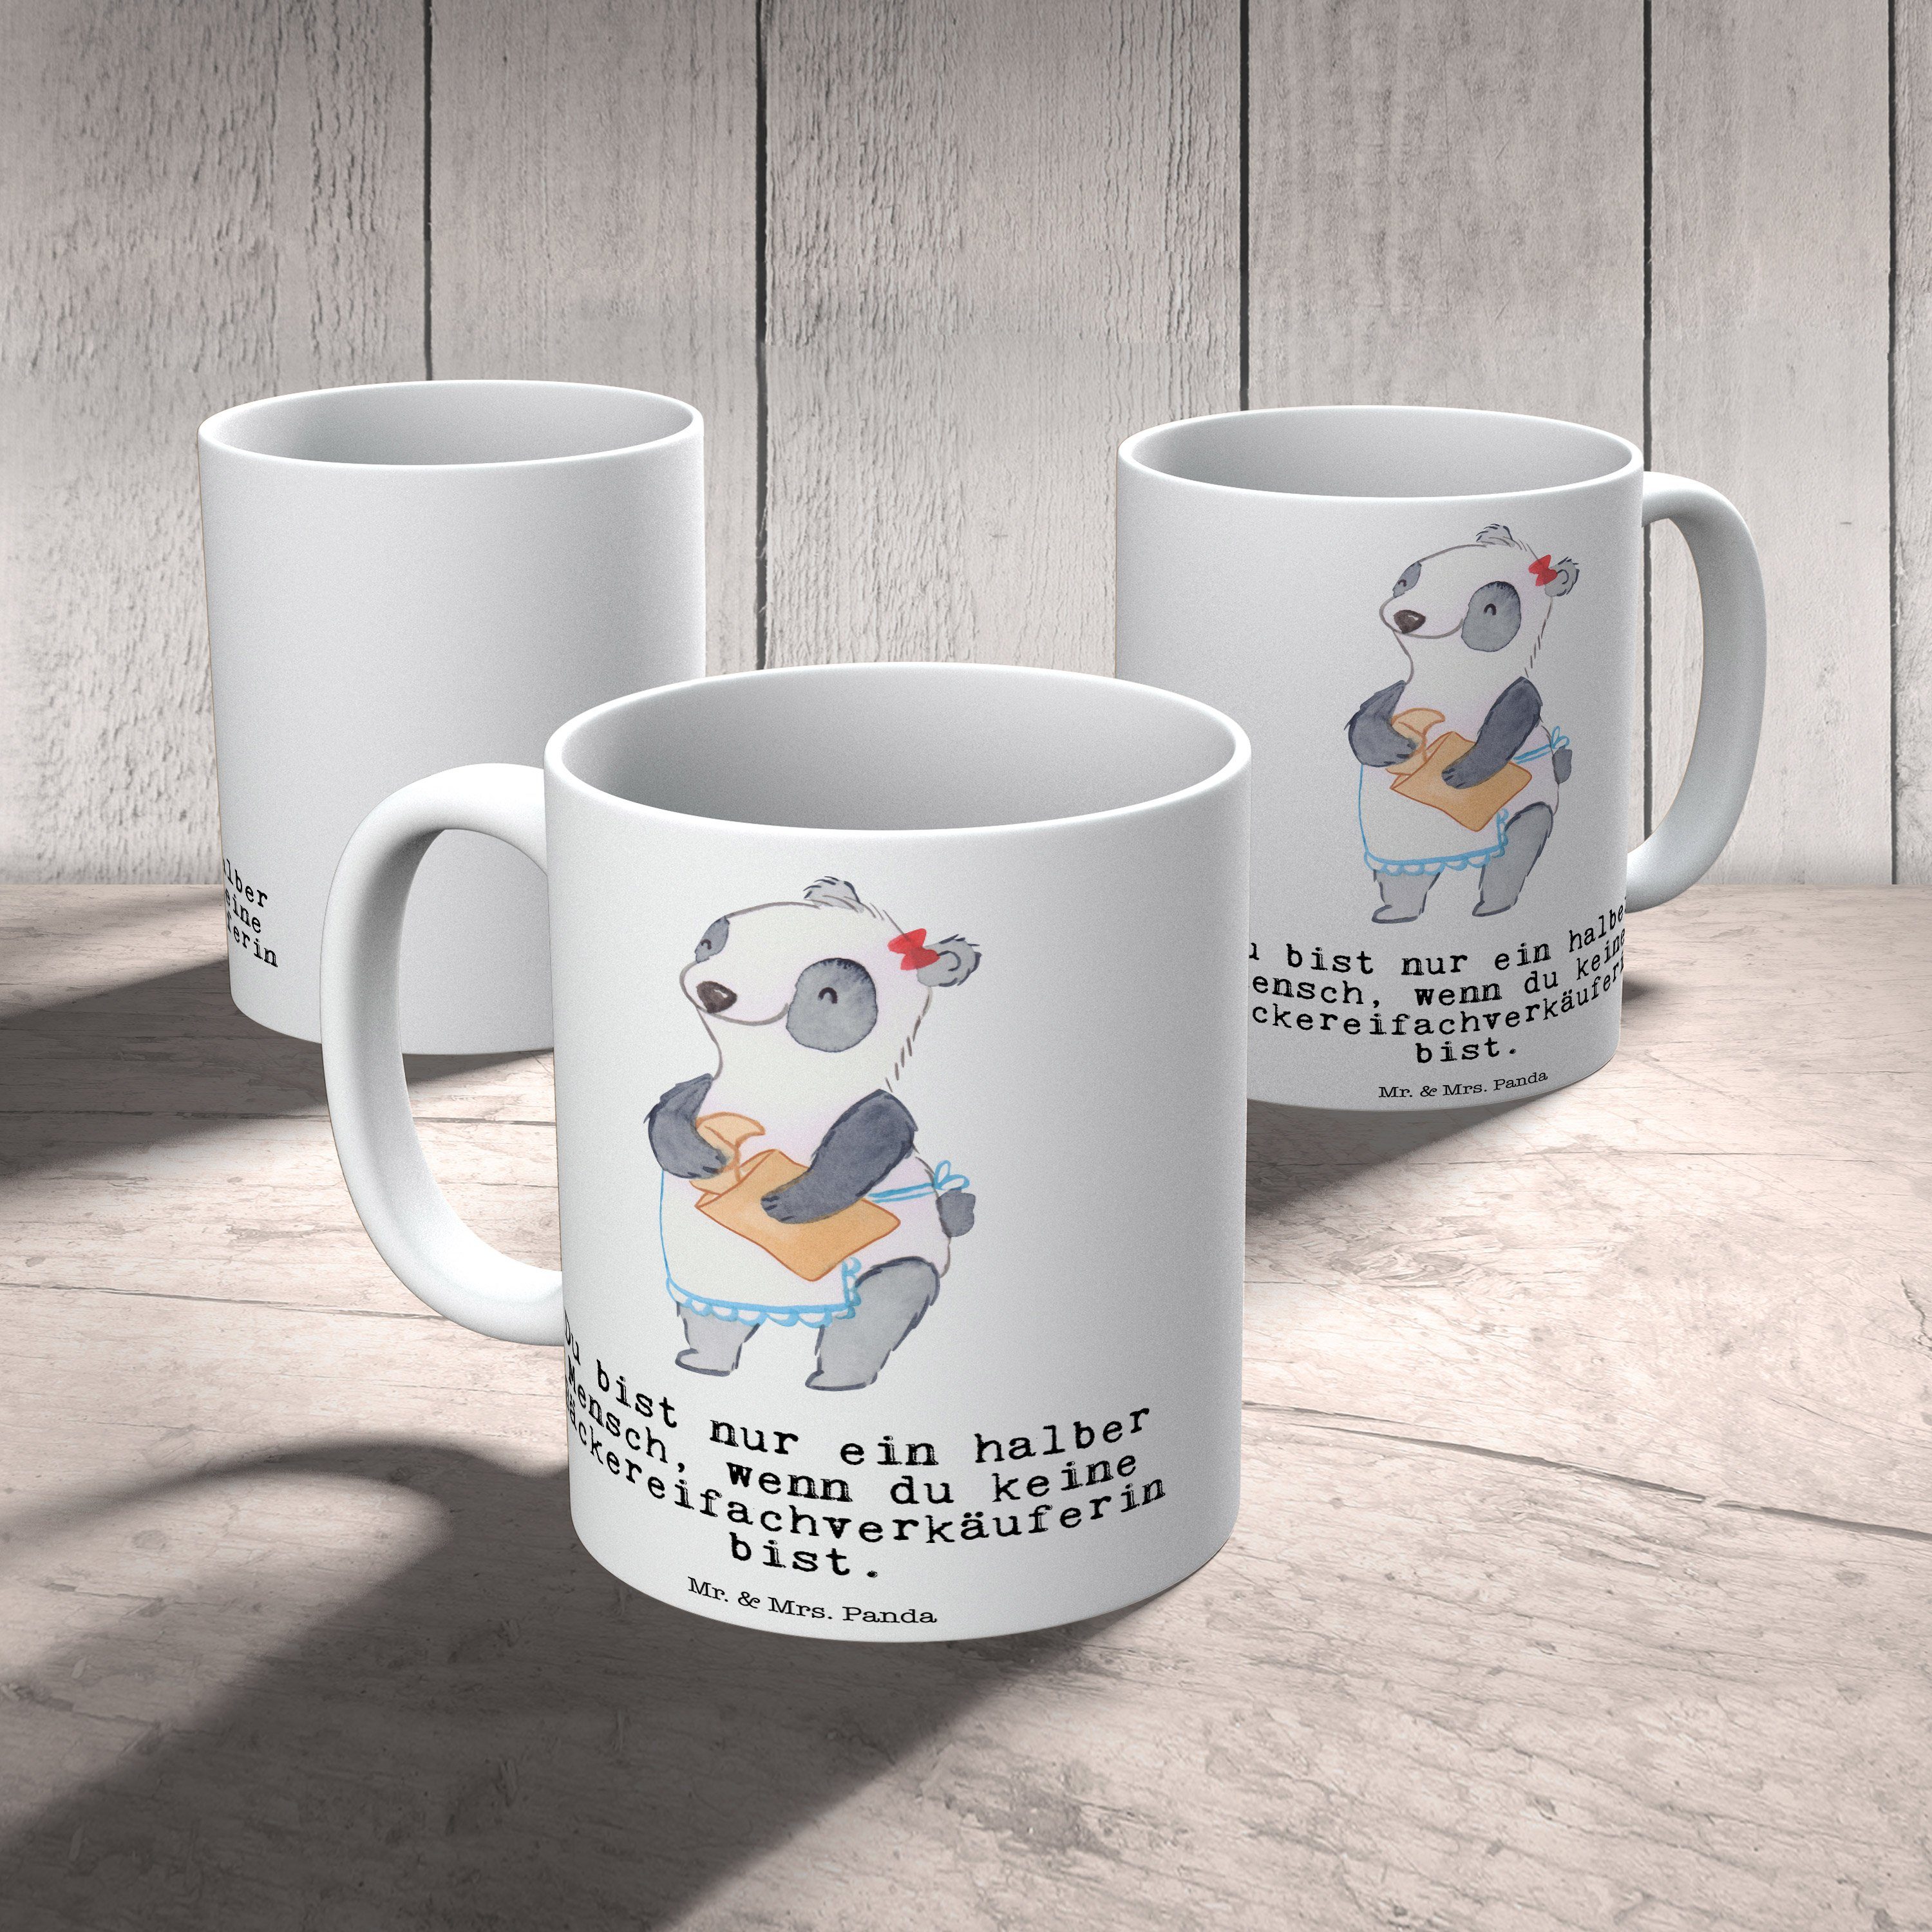 - Weiß Tasse Keramik Bäckereifachverkäuferin Tasse & Geschenk, mit Sprü, Mr. Rente, Panda Herz Mrs. -